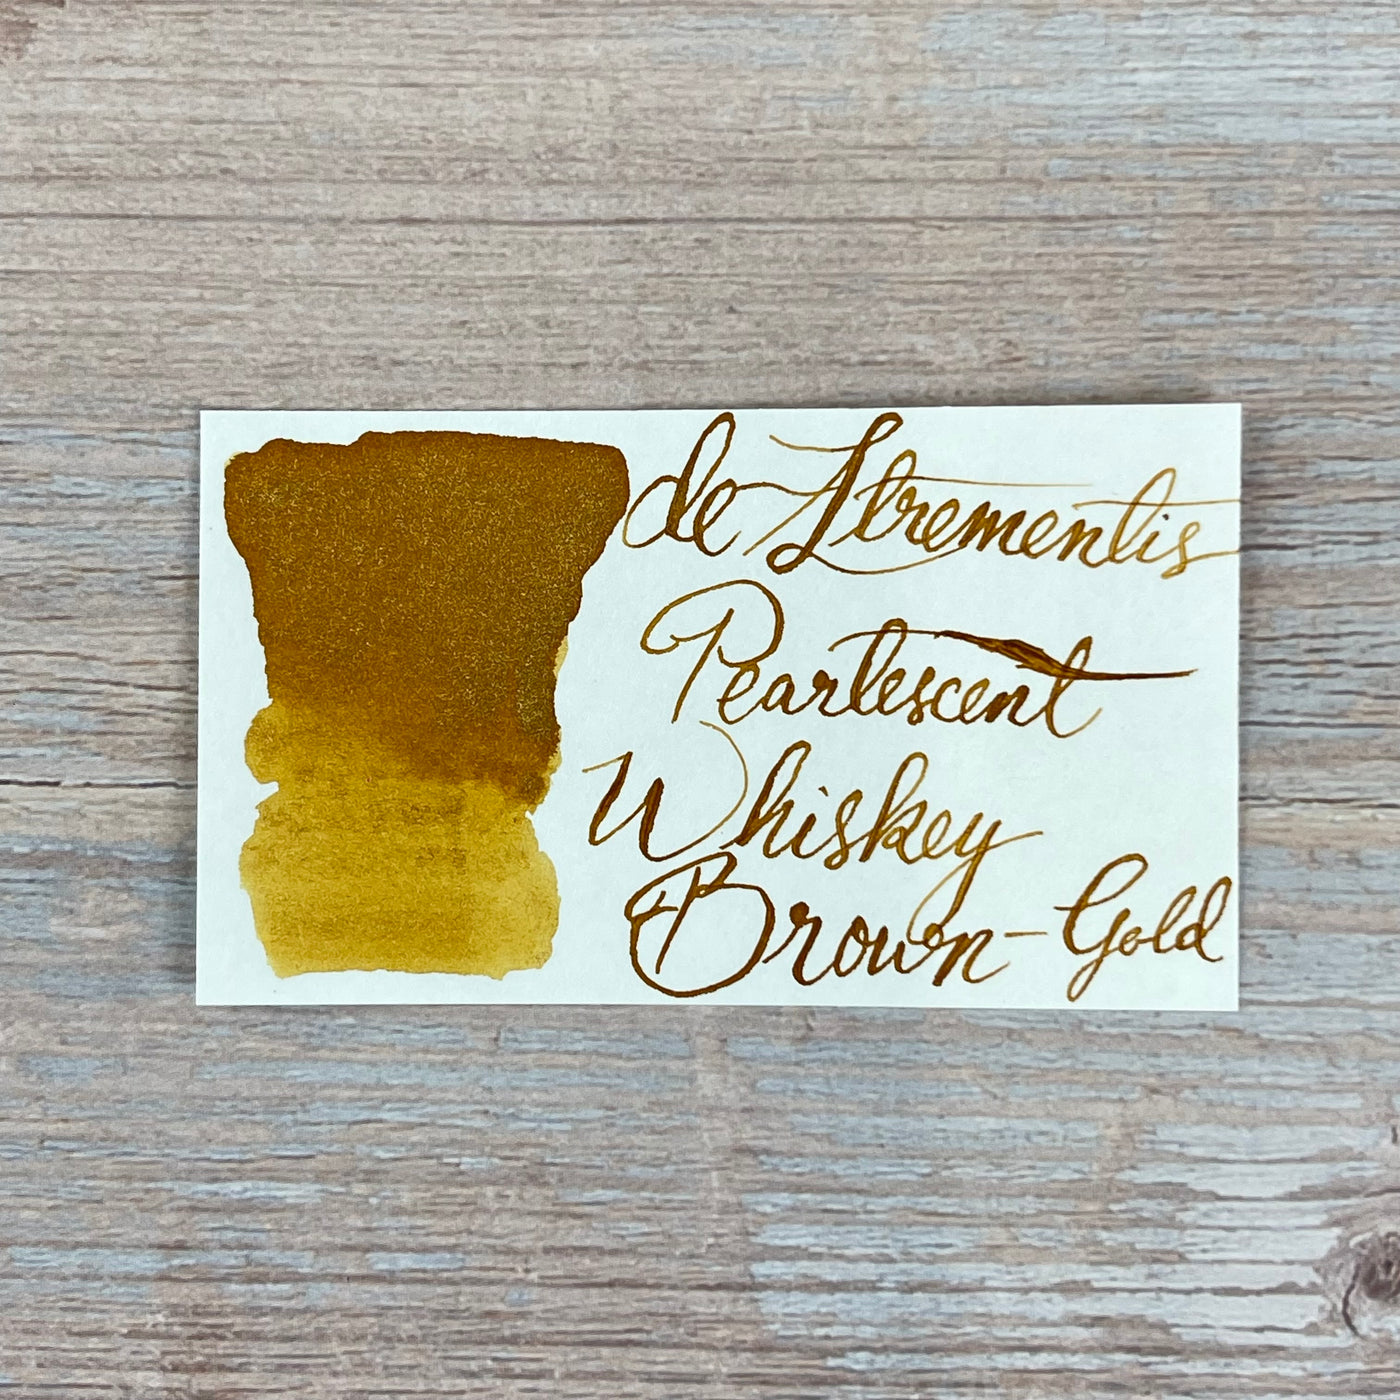 De Atramentis Pearlescent Whisky Brown Gold - 45ml Bottled ink